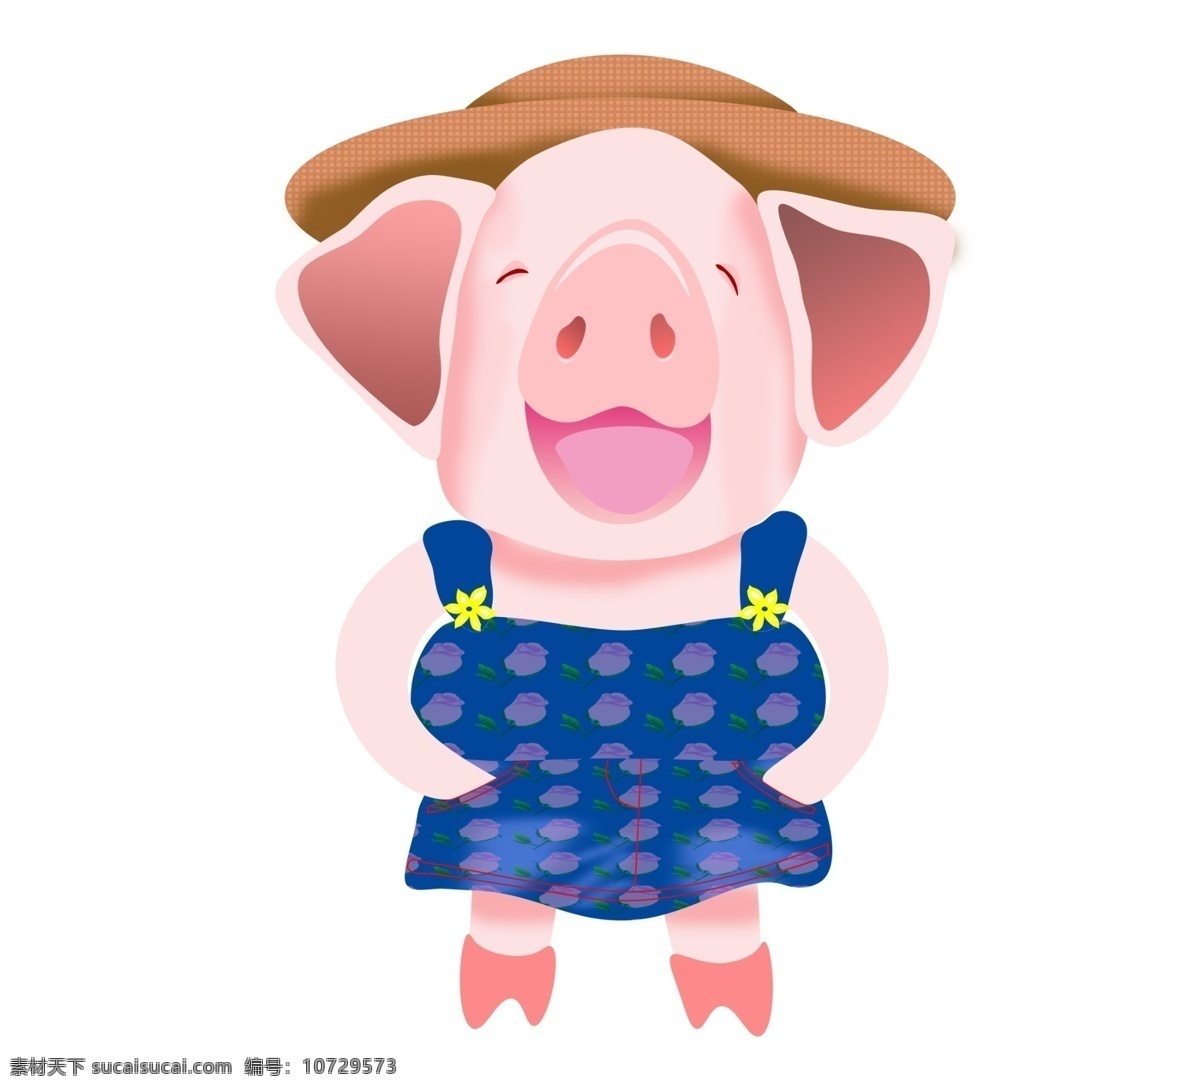 2019 中国 农历 年 吉祥物 可爱 小 猪 生肖 微笑 动物 帽子 中国农历年 小猪猪 photoshop 矢量 弔带裤